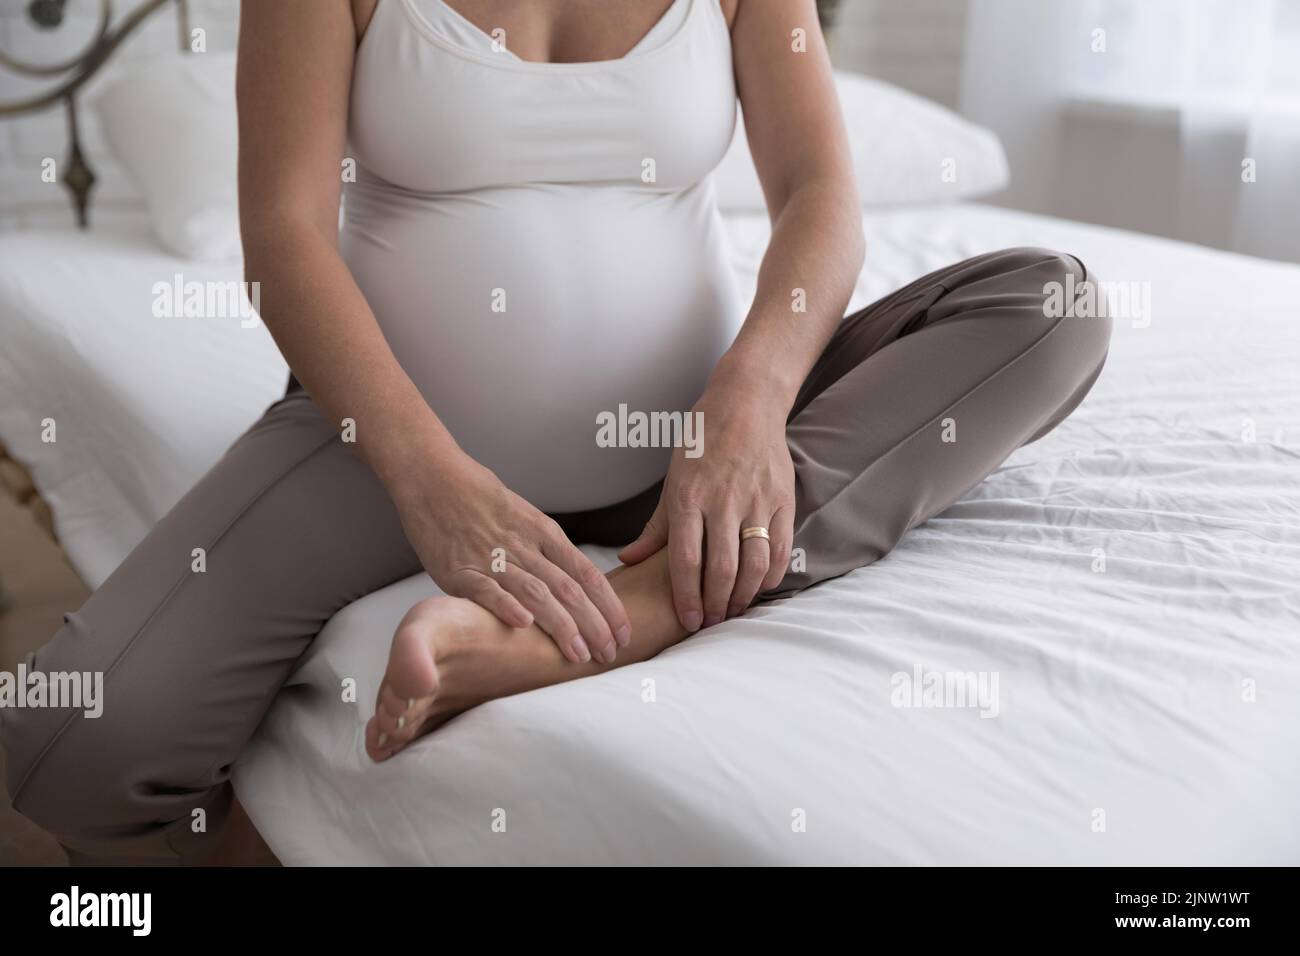 La mujer embarazada se sienta en la cama tocando su tobillo dolorido Foto de stock